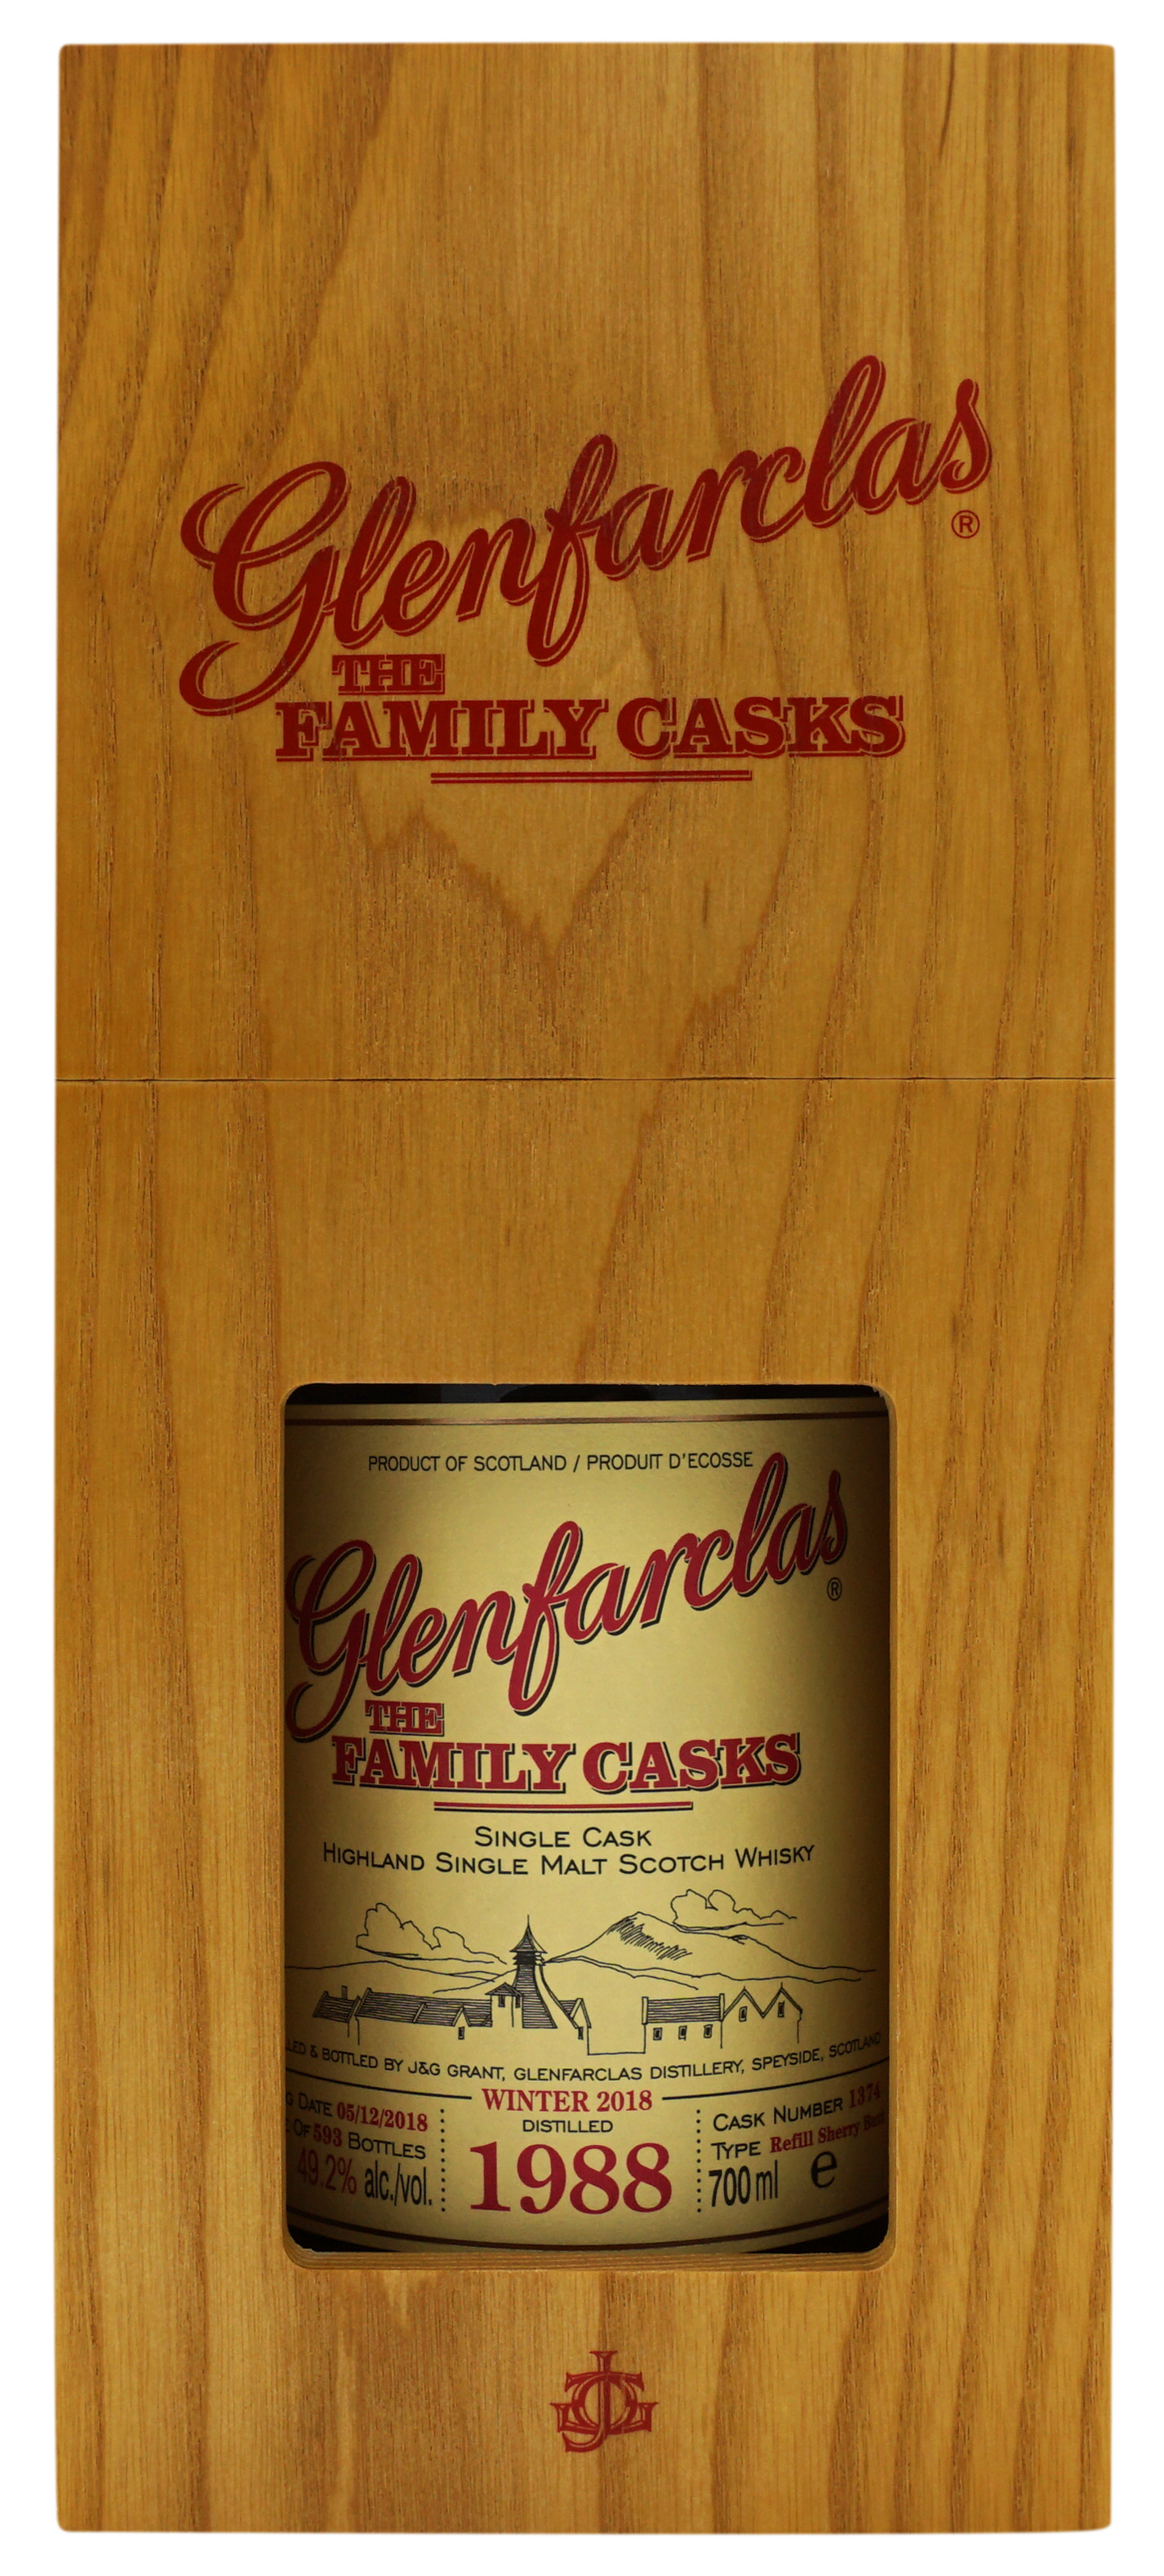 Glenfarclas 1988 Family Cask 1374 492 Compleet